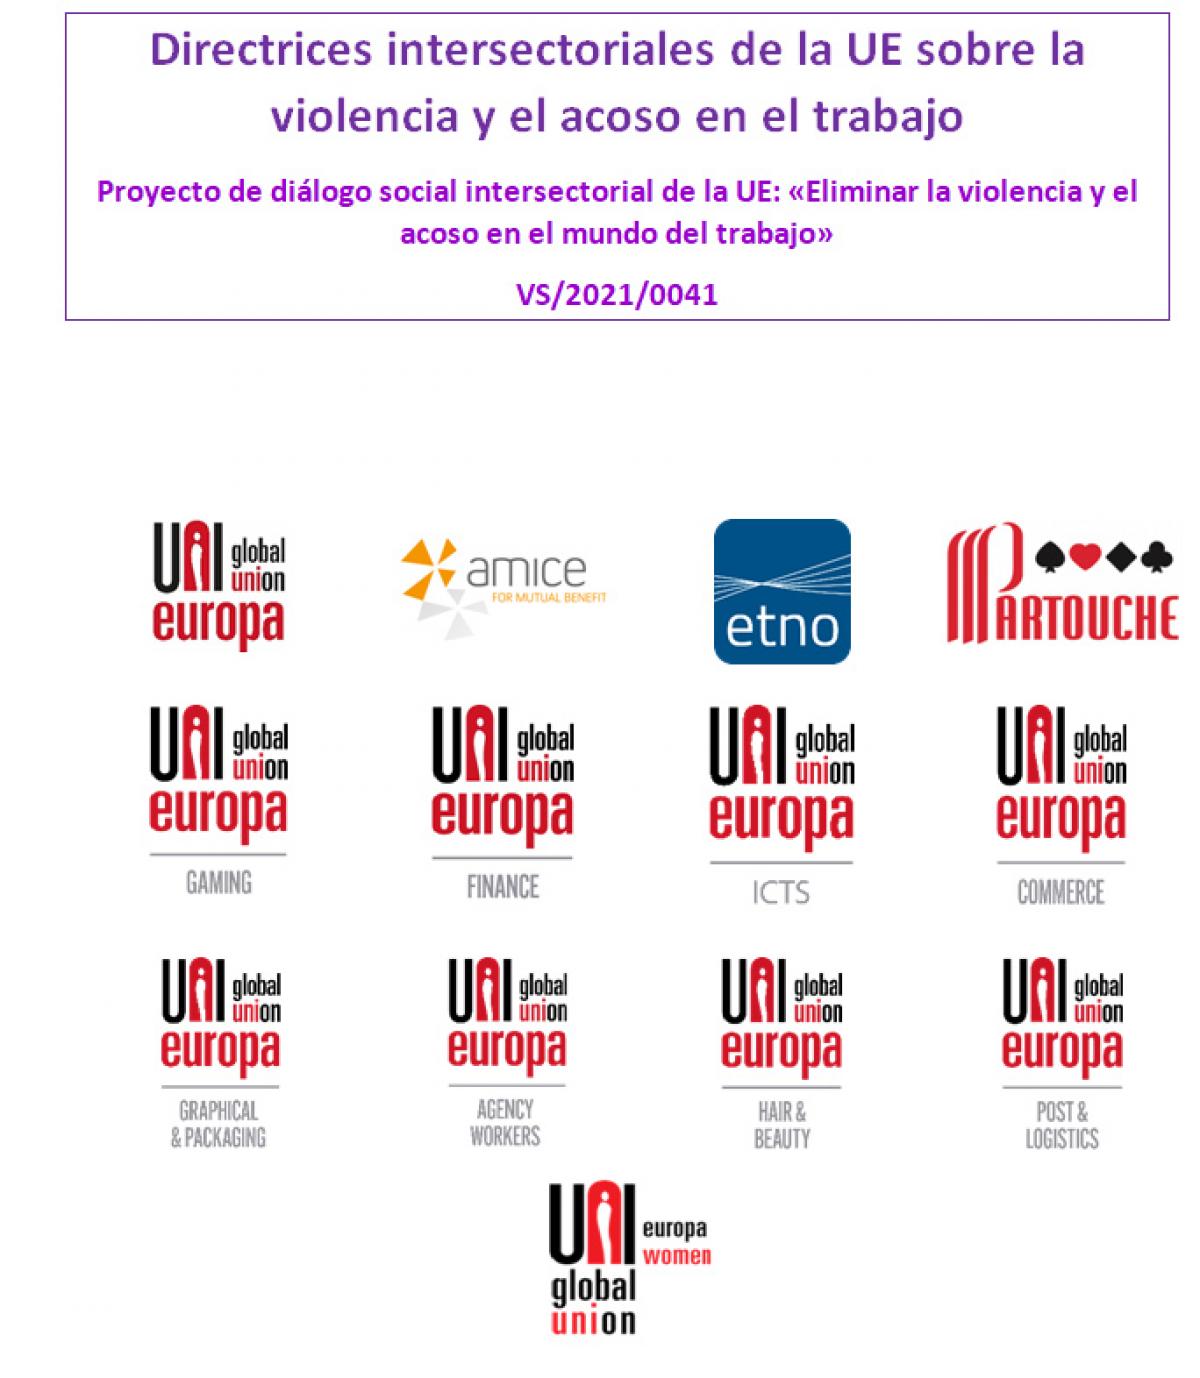 Directrices intersectoriales de la UE sobre la violencia y el acoso en el trabajo